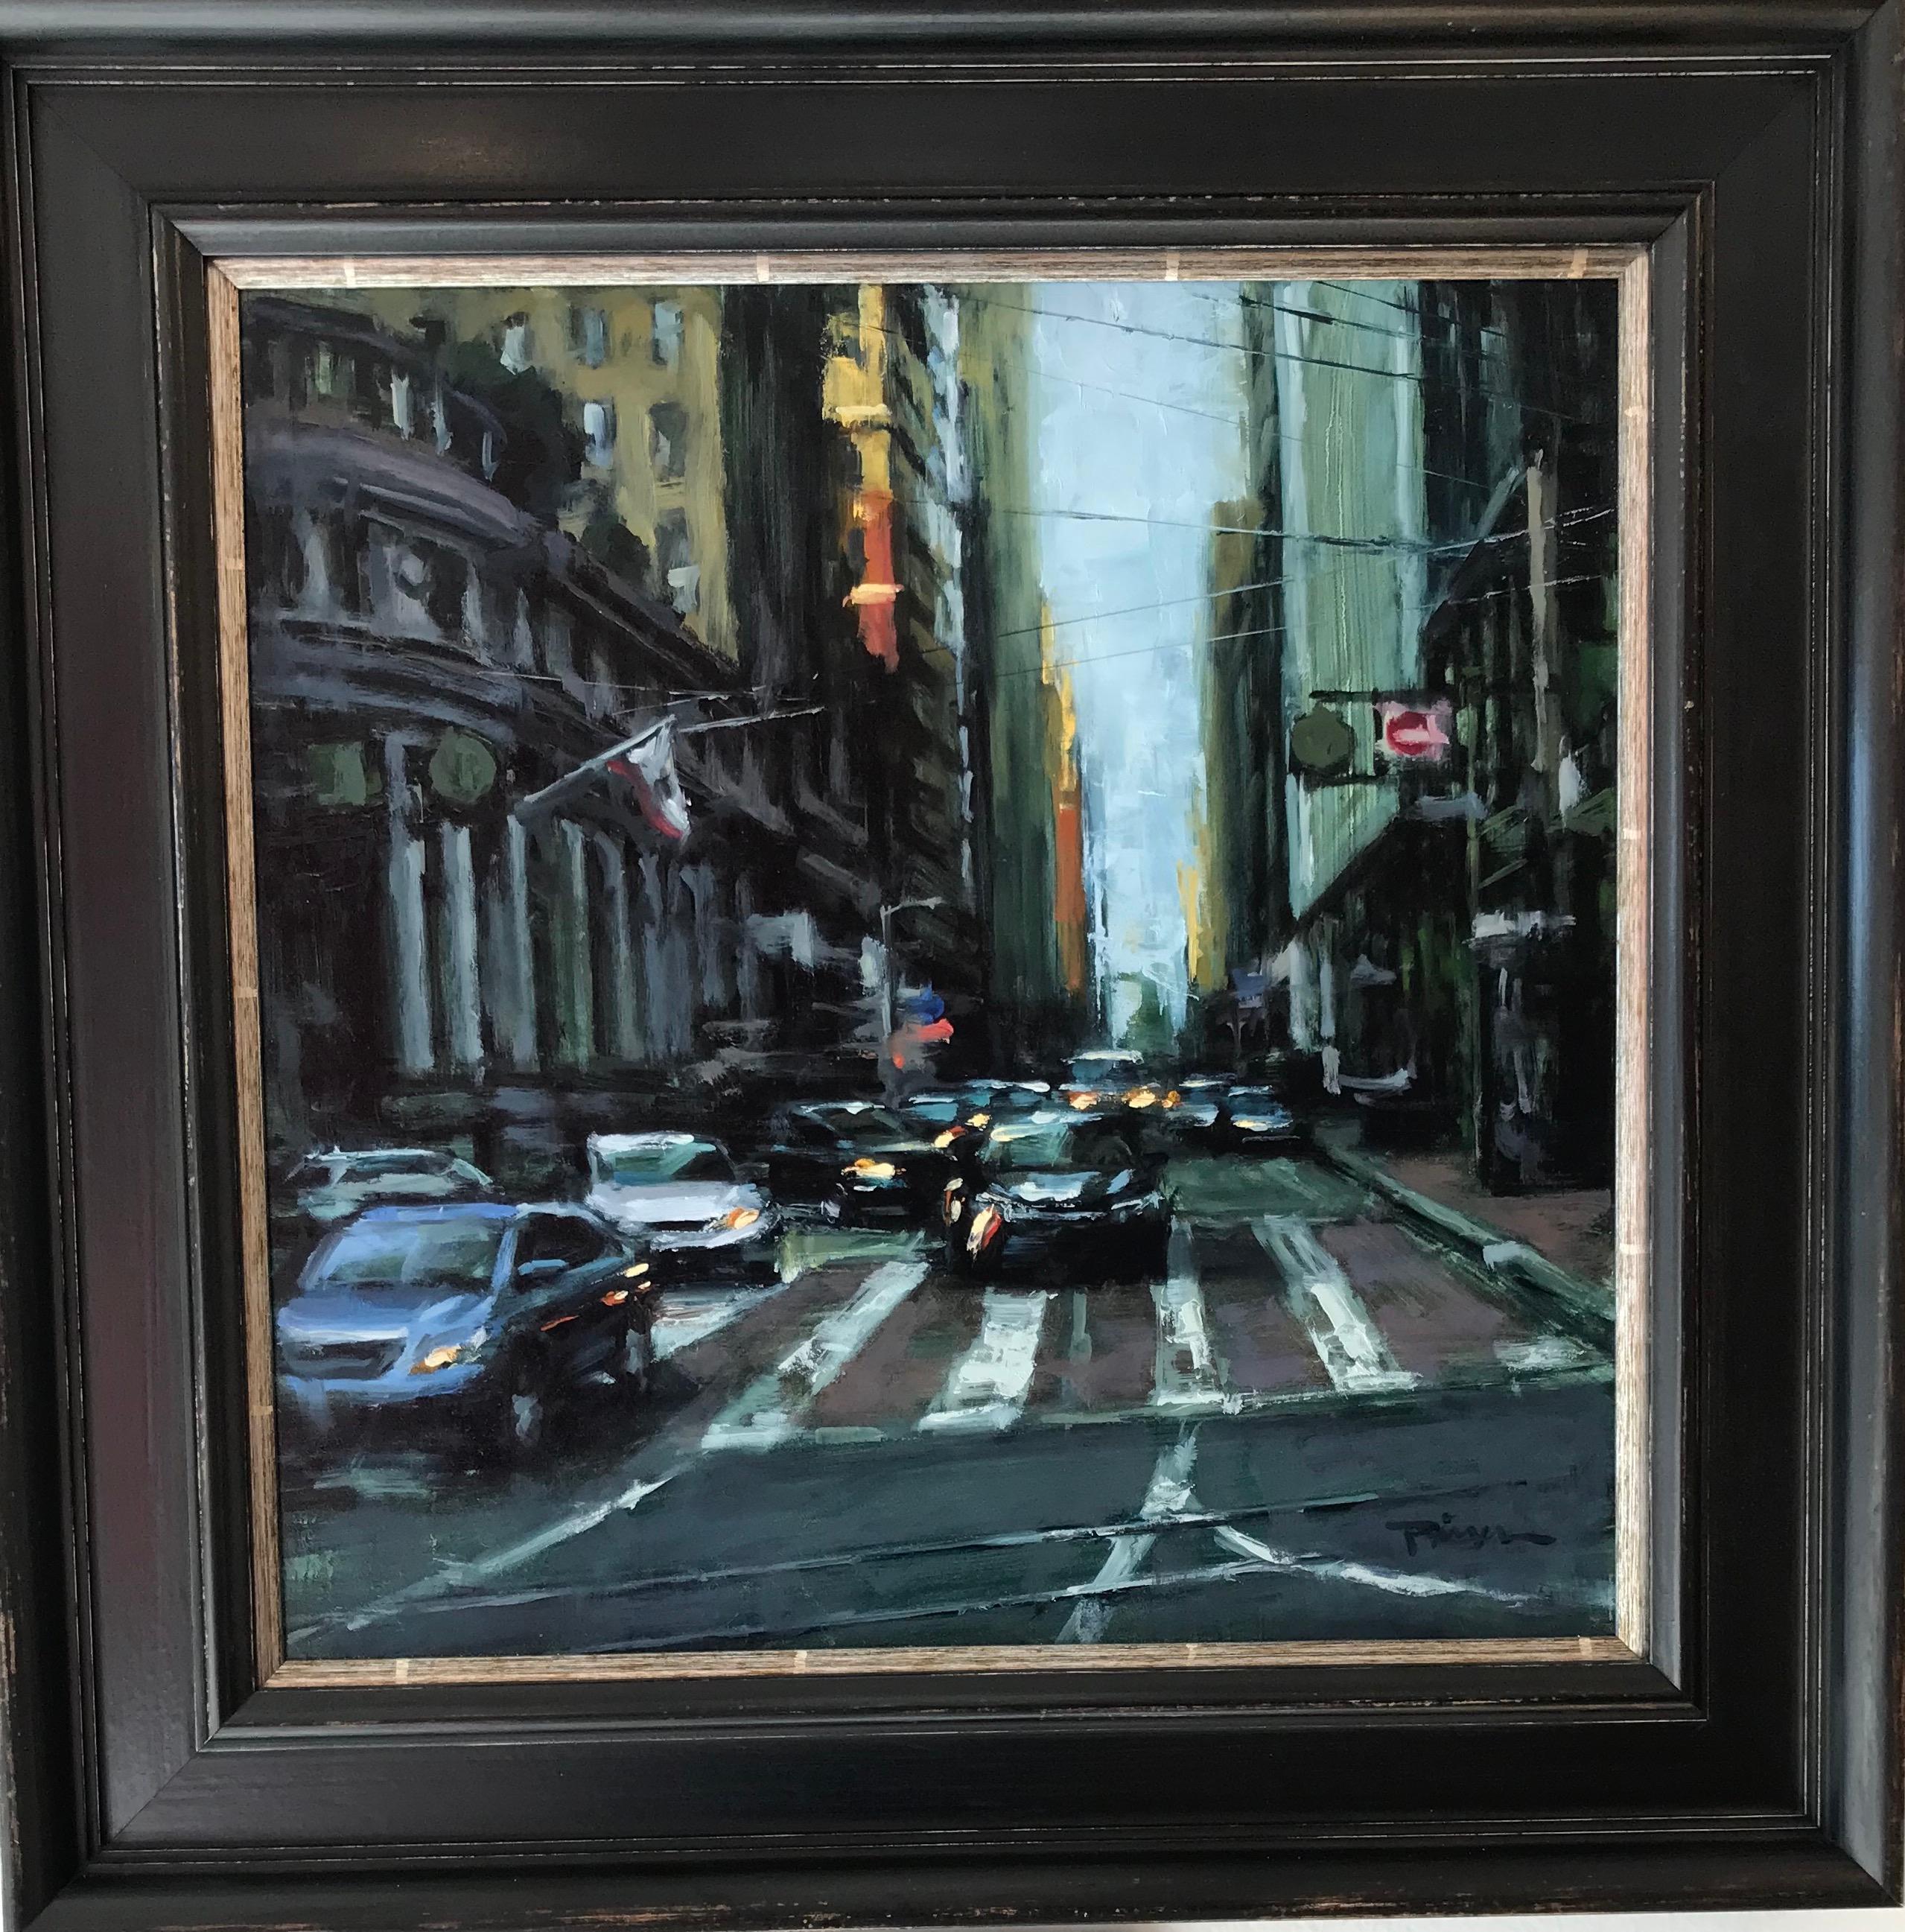 « Montgomery Street » - Scène impressionniste contemporaine de San Francisco - Painting de Pil Ho Lee